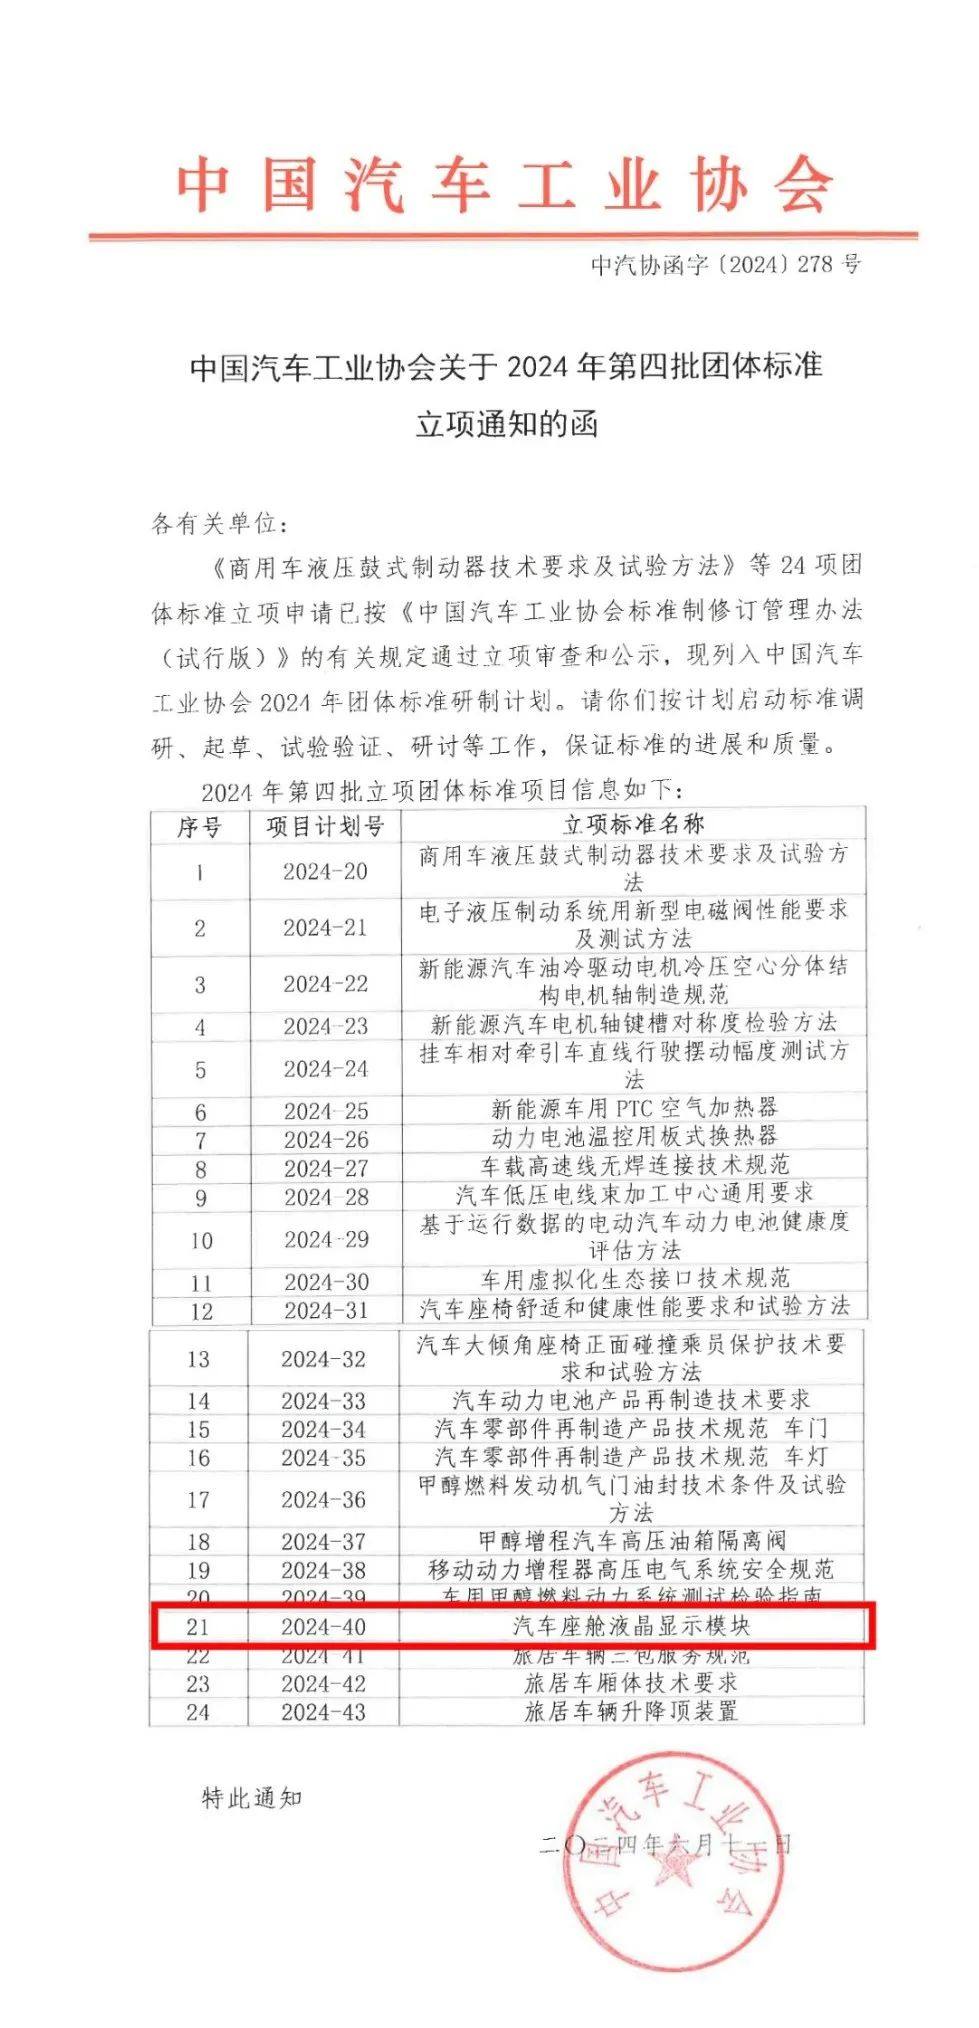 由天马牵头的团体标准《汽车座舱液晶显示模块》获中国汽车工业协会正式批准立项